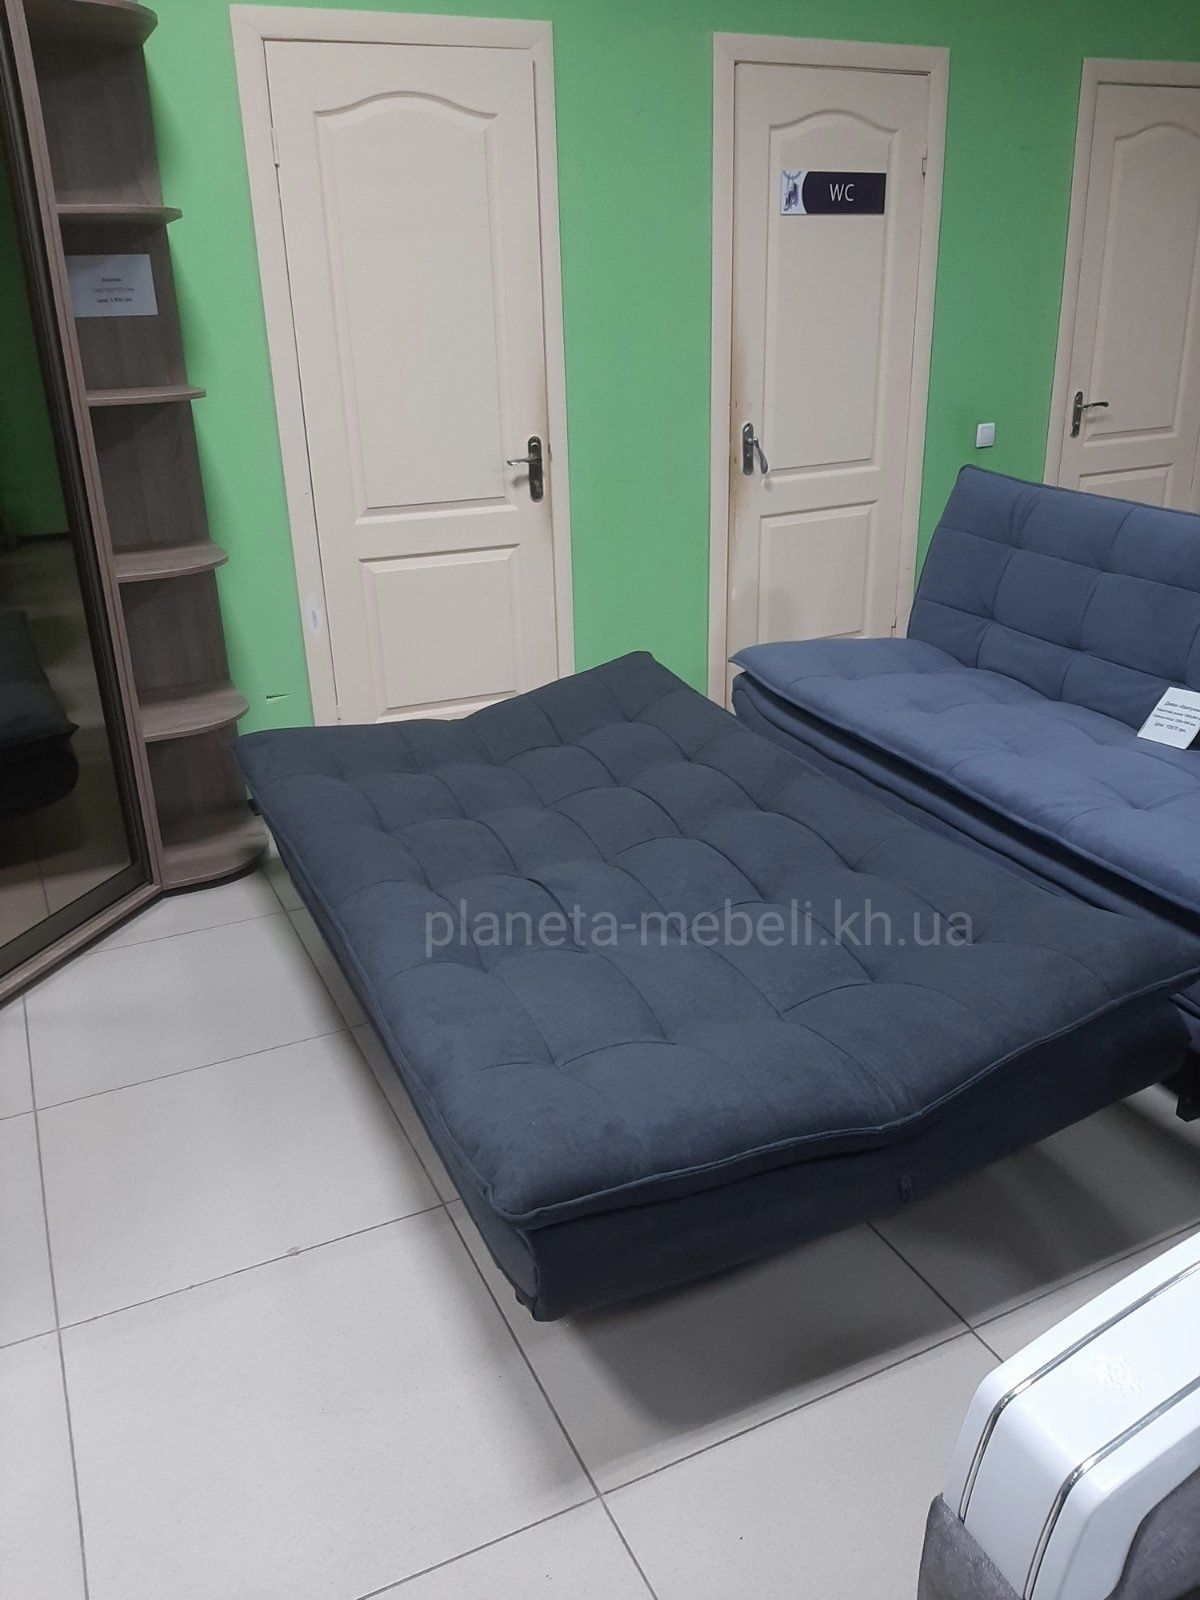 Недорогі дивани Харків, купити диван в Харкові, дивани Харків